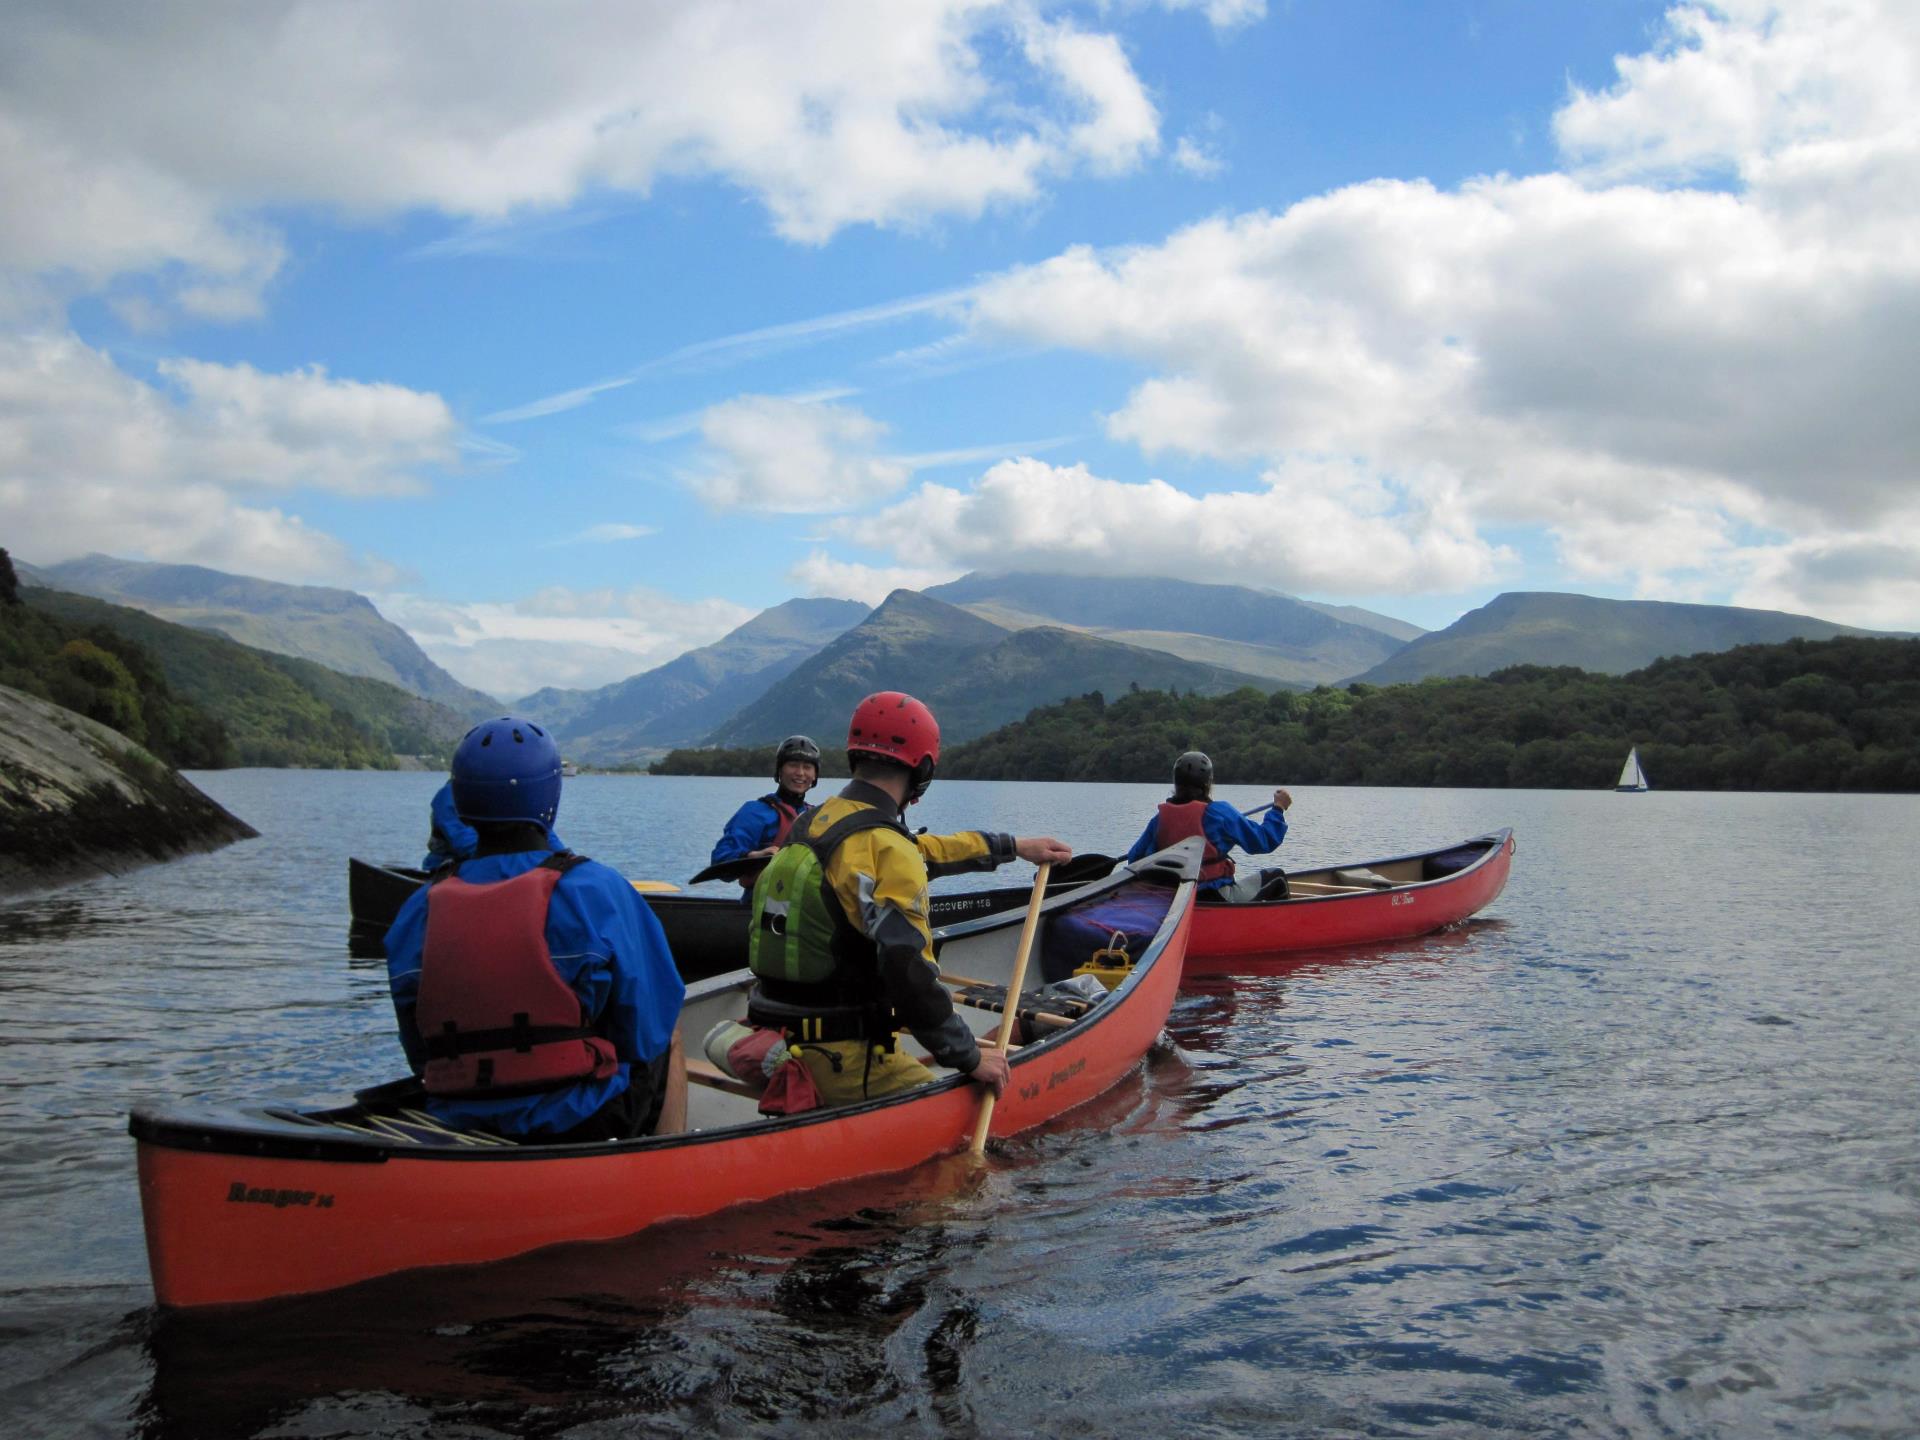 Canoe Tour of Llyn Padarn